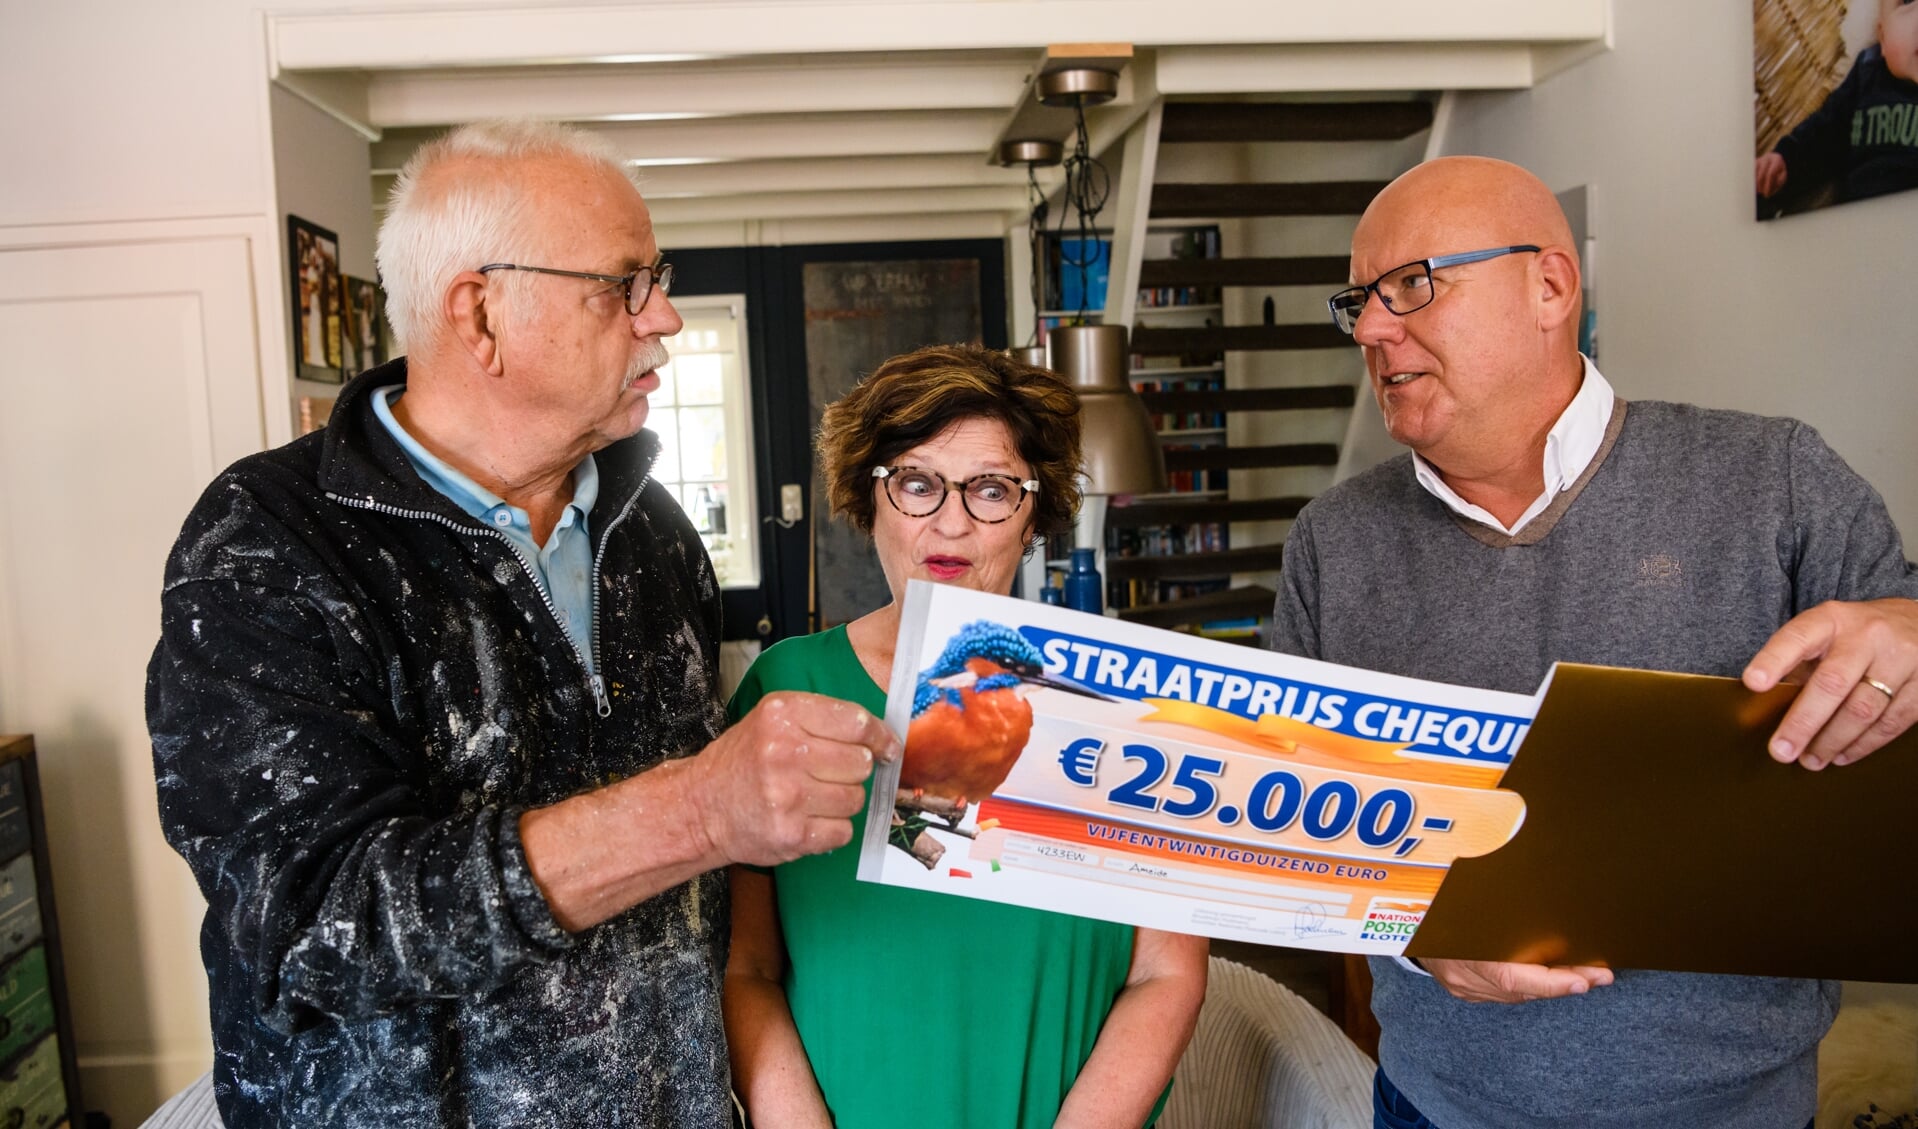 Jan Willem en zijn vrouw uit Ameide worden verrast door Postcode Loterij-ambassadeur Gaston Starreveld met de PostcodeStraatprijs-cheque